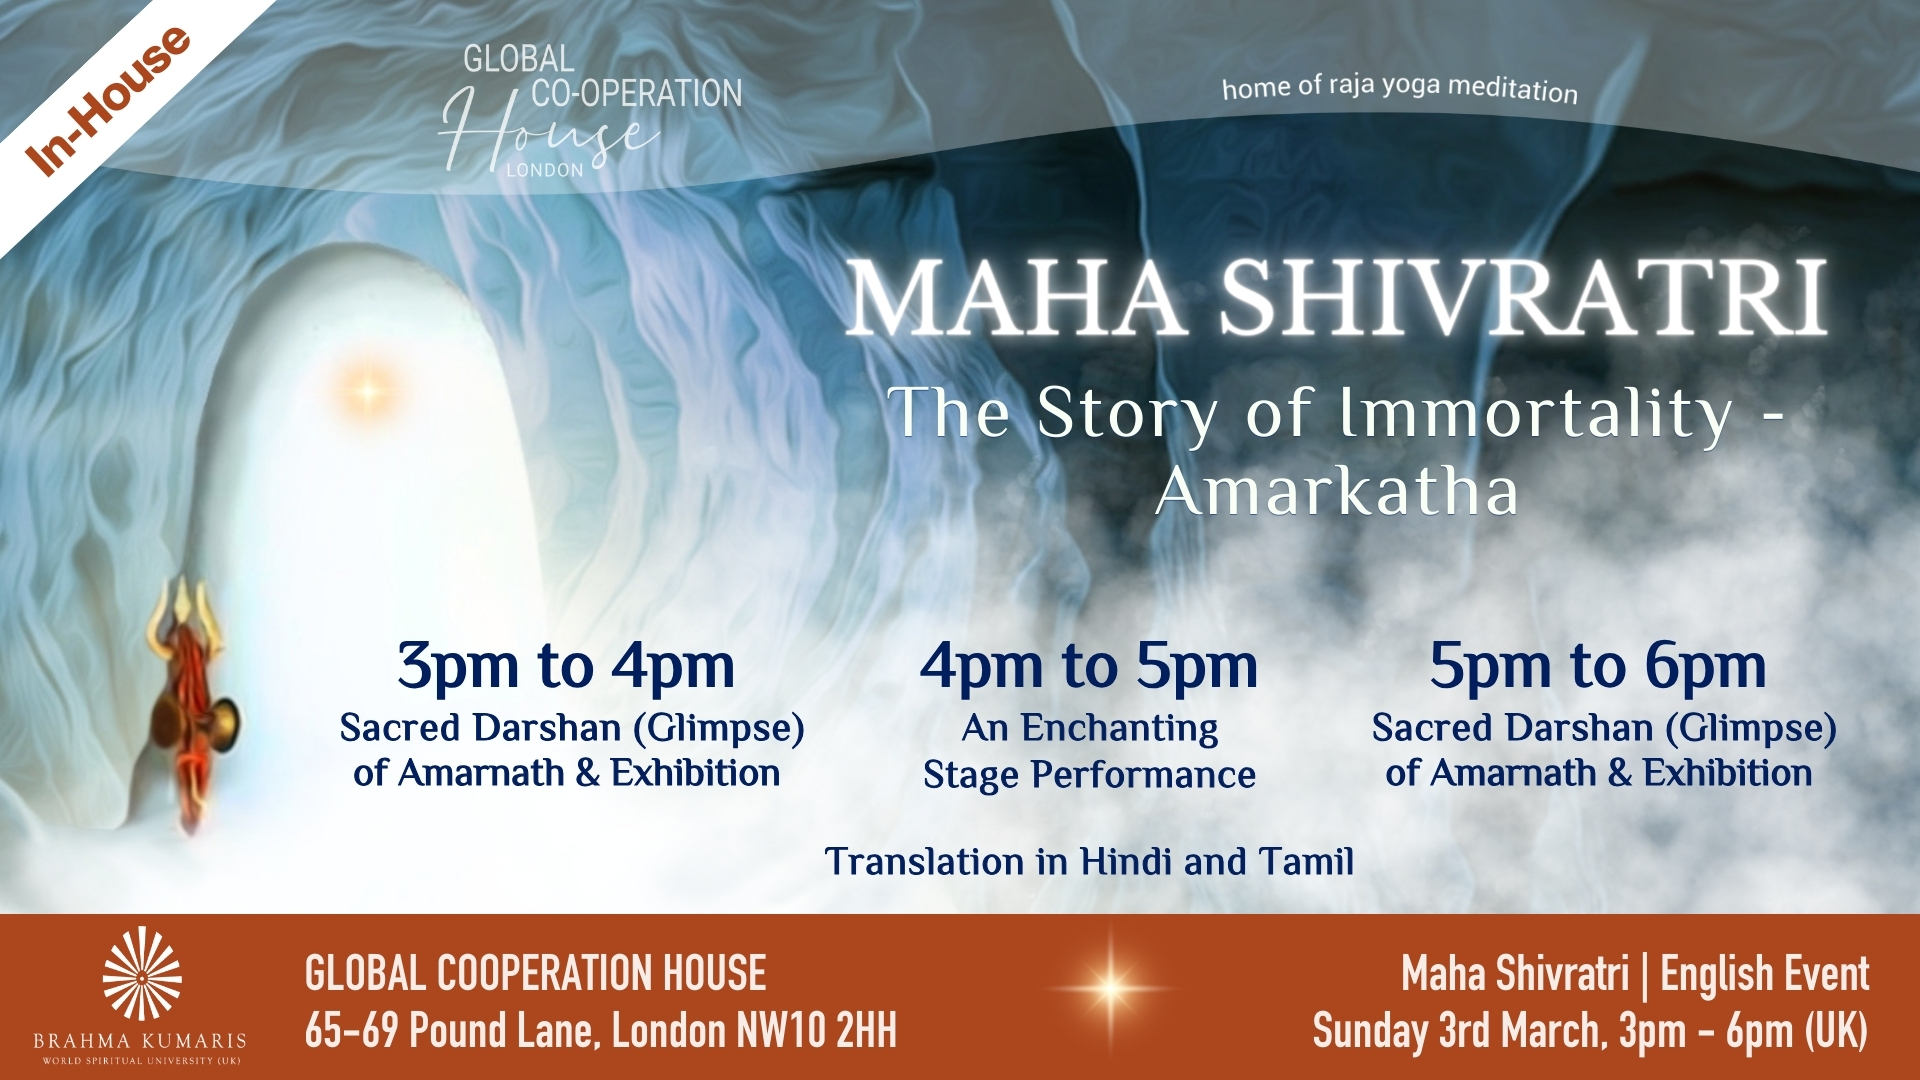 Maha Shivratri - The Story of Immortality - Amarkatha